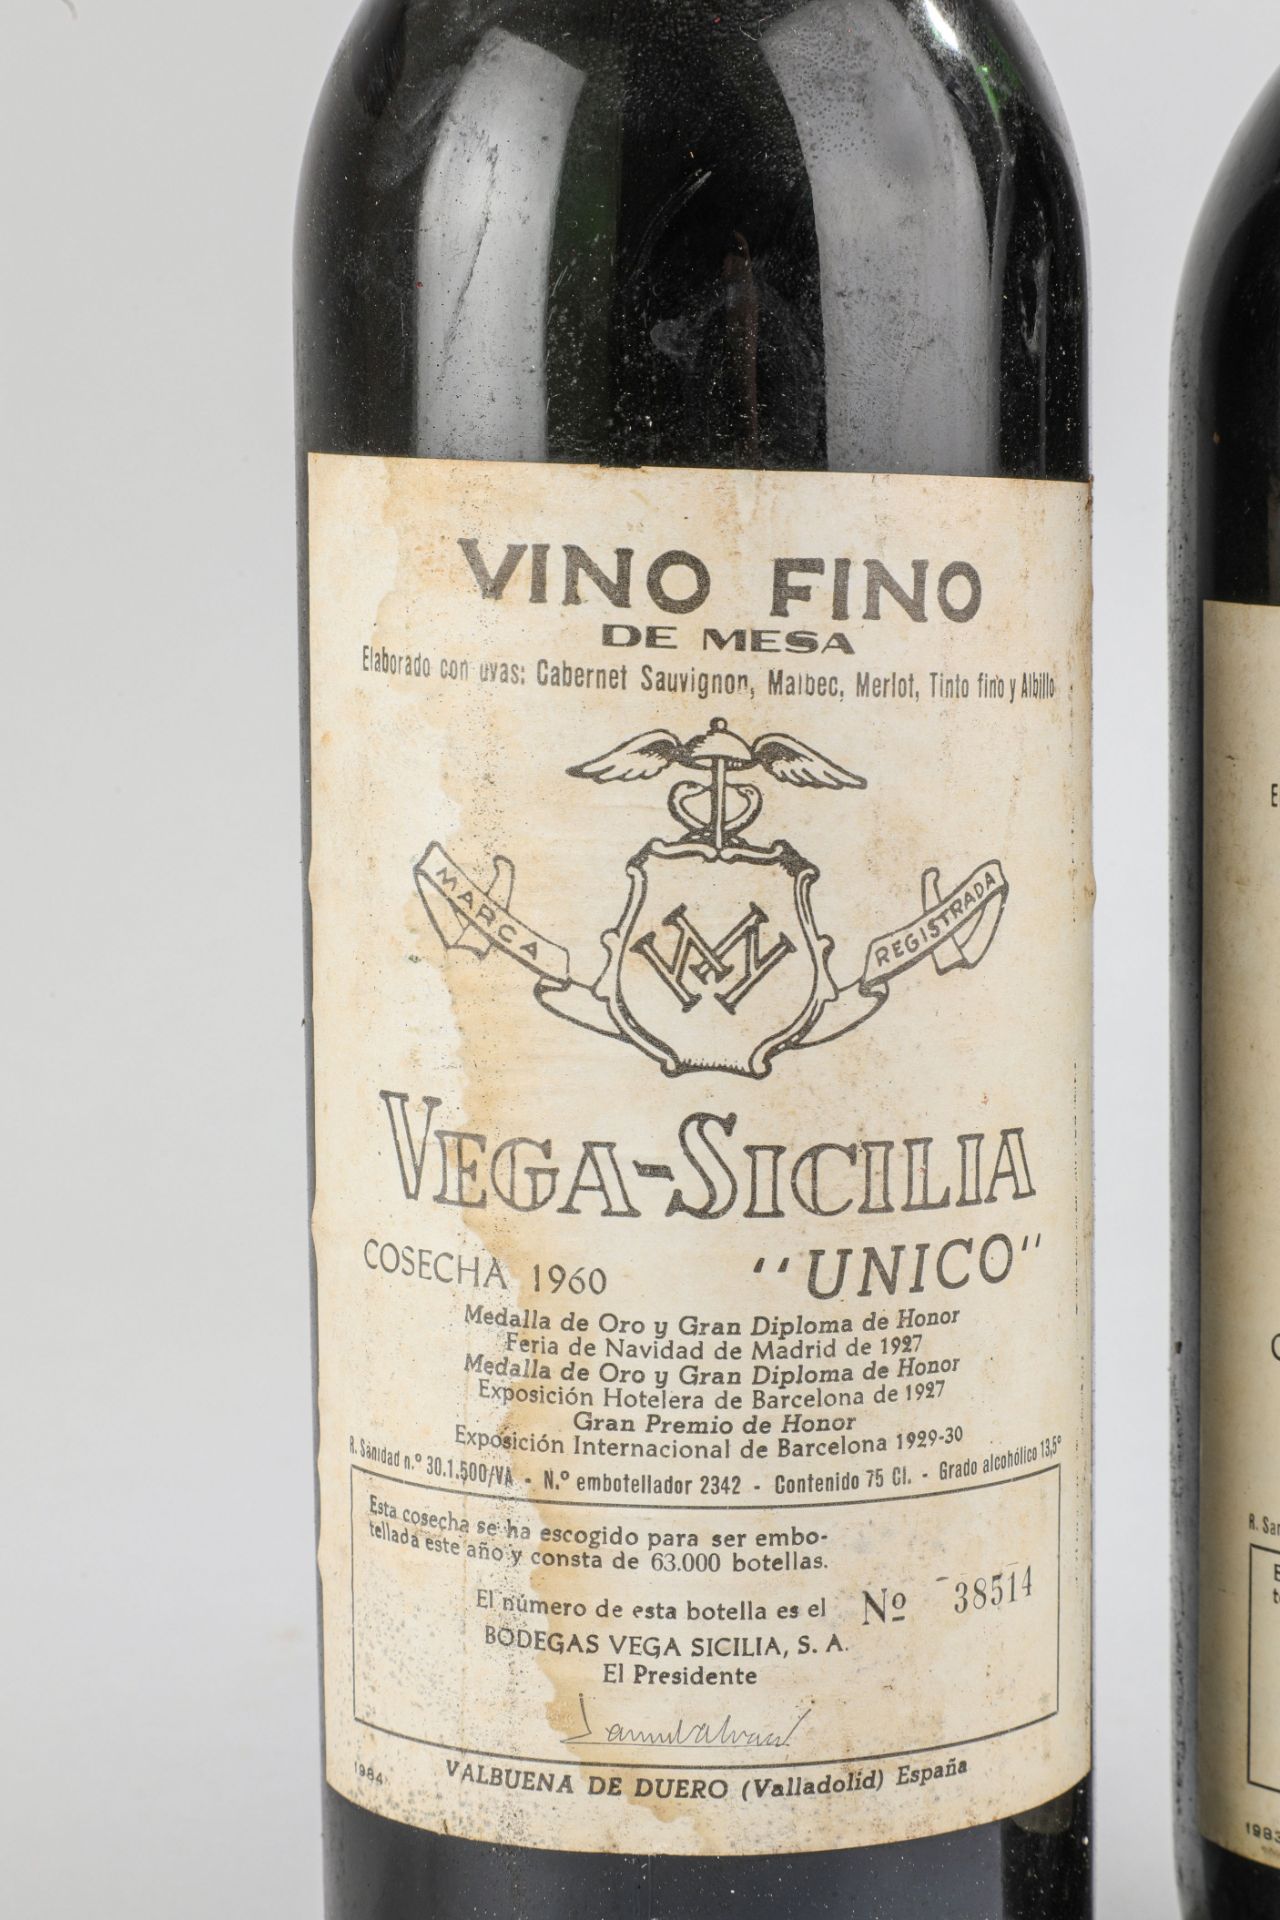 VEGA SICILIA UNICO. 1960. 2 bouteilles N°38514 et N°29776 sur production 63 000 bouteilles. - Image 2 of 4